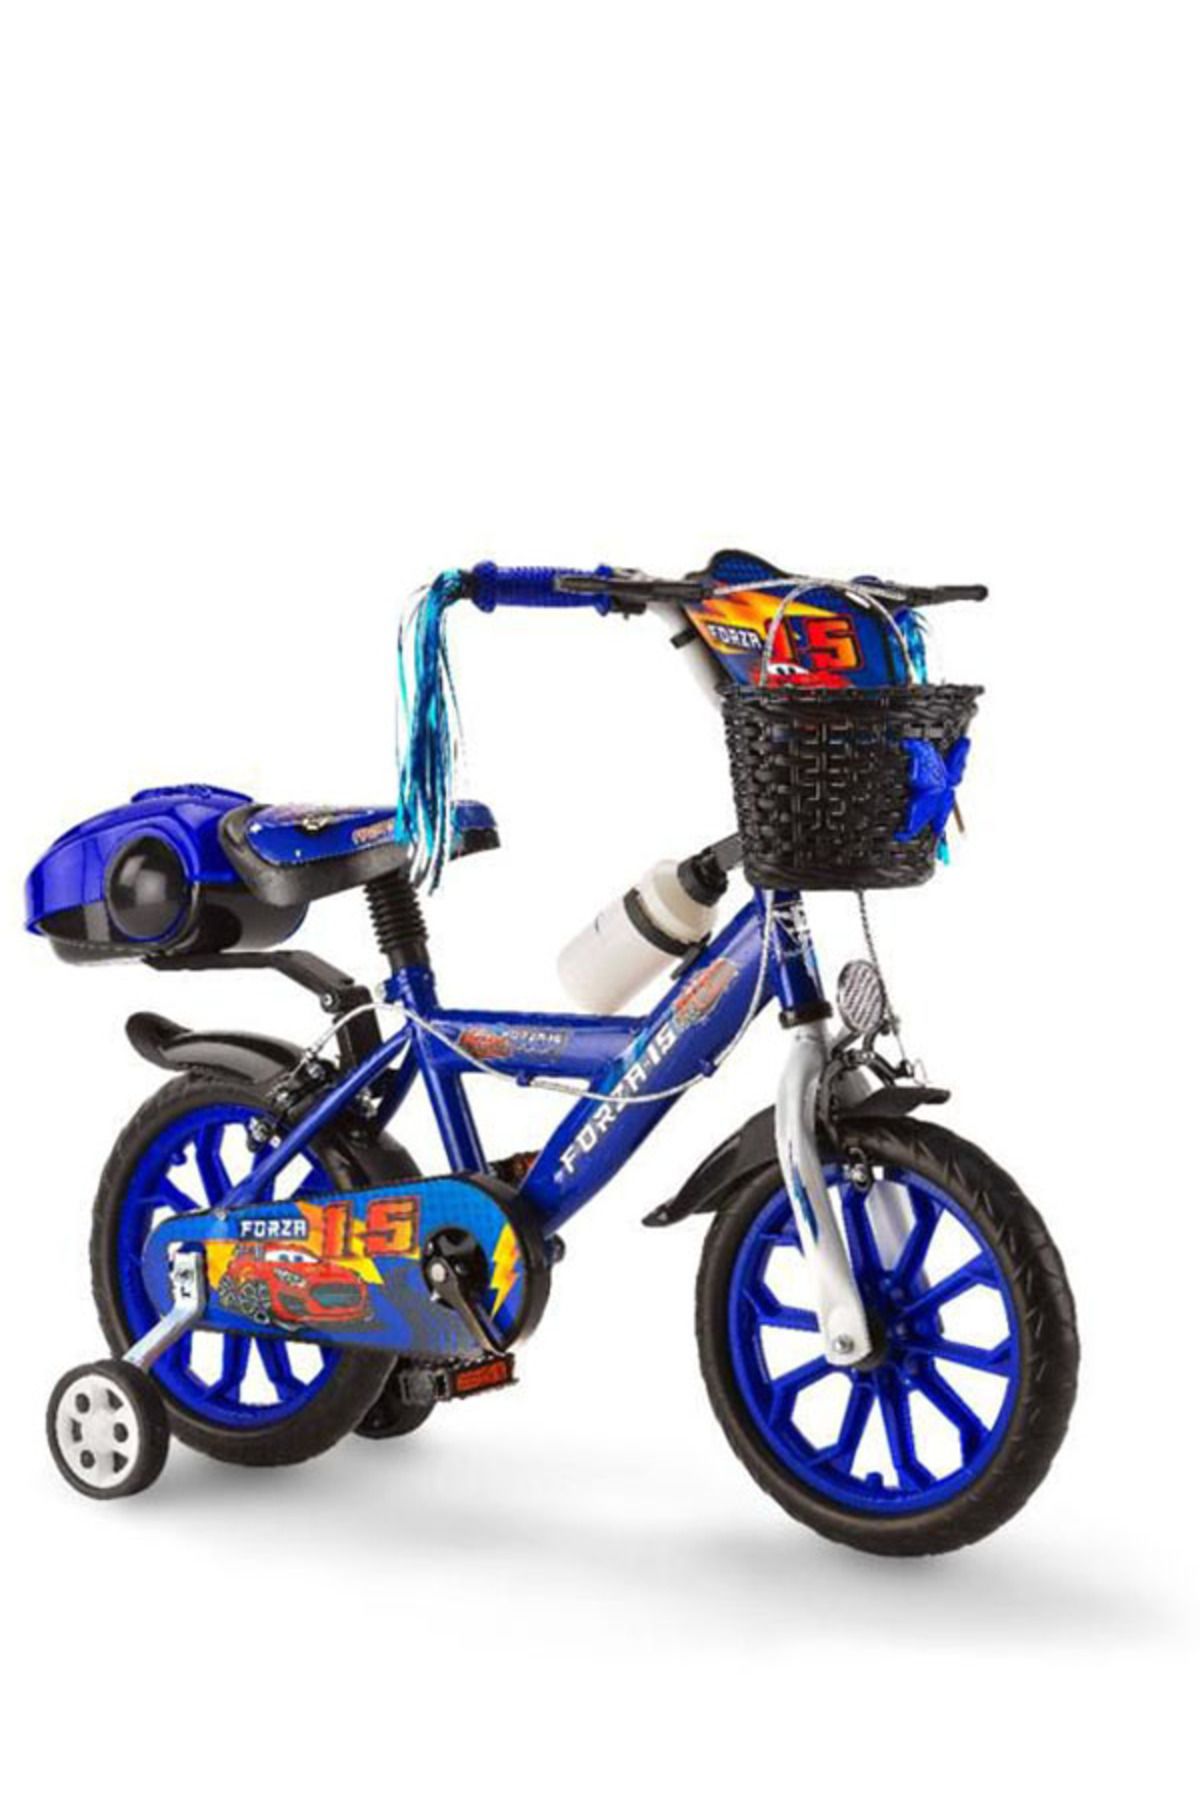 Dilaver Toyshome Forza 15 Jant Mavi Lüx Çocuk Bisikleti ( 4-5-6-7 ) Yaş Grubu Çocuklar Için Uygundur